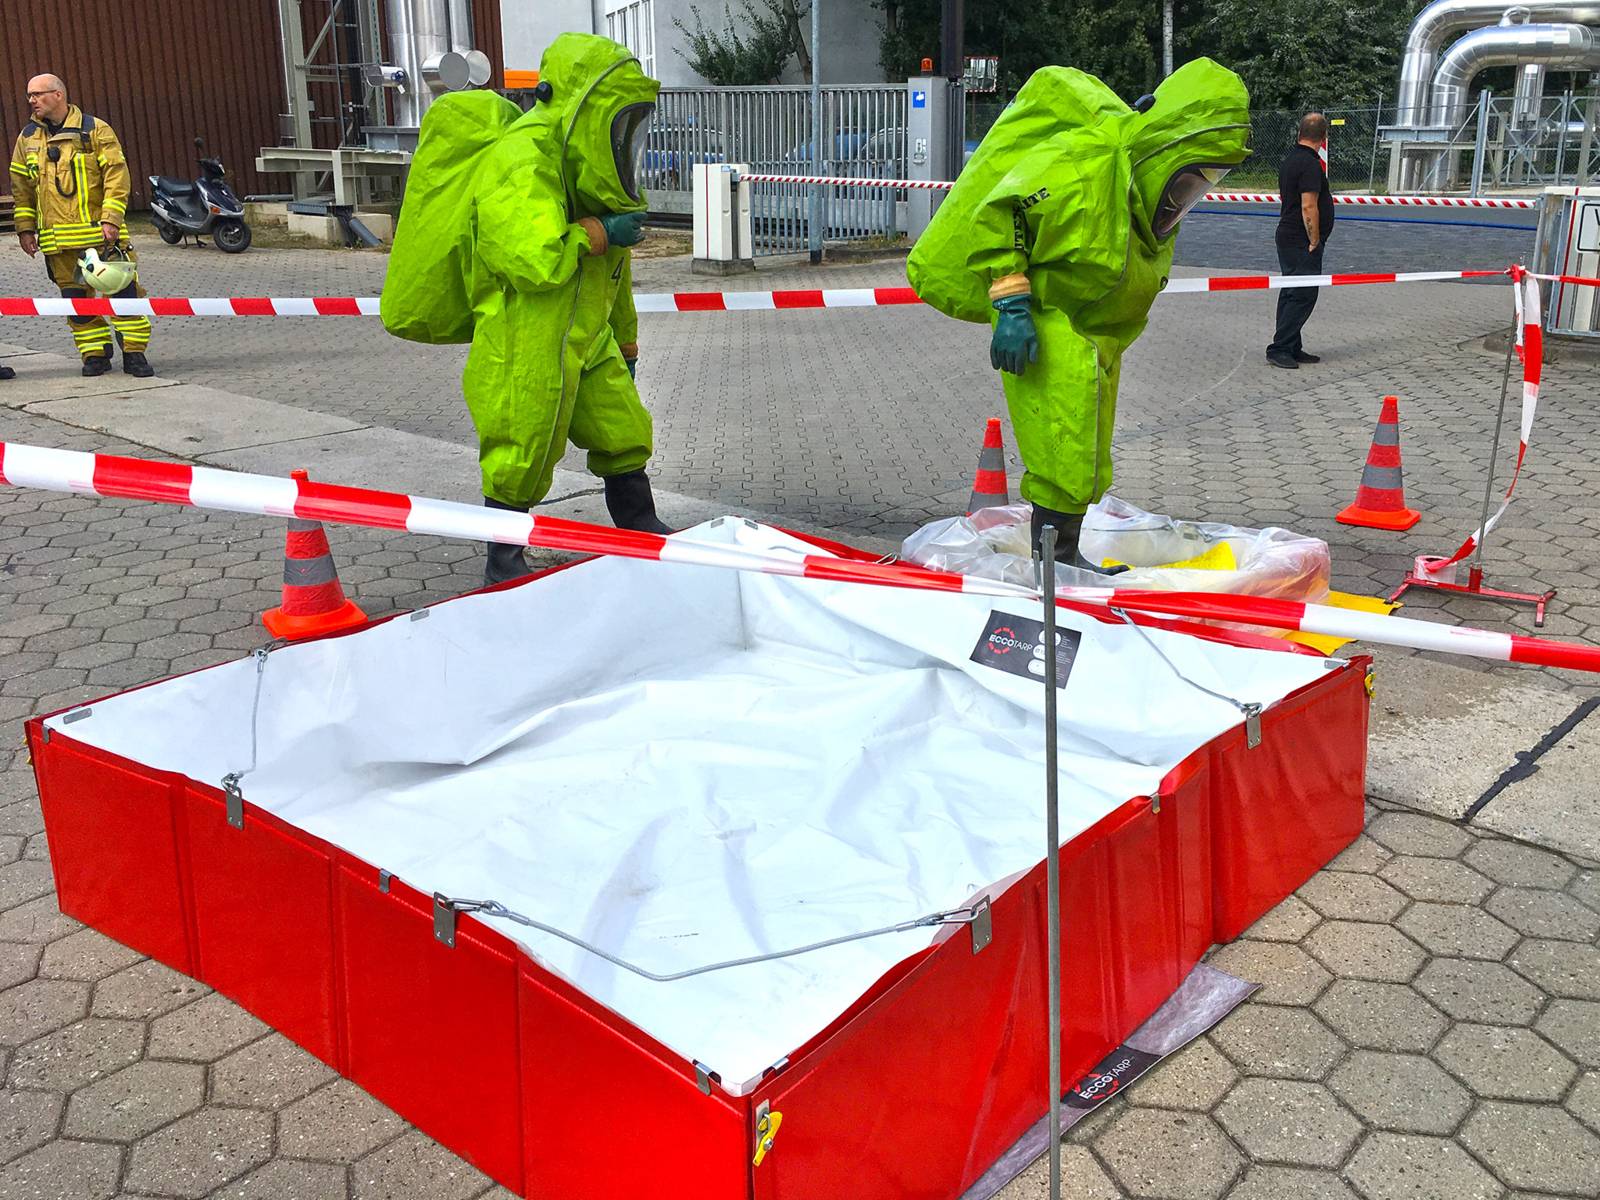 Zwei Einsatzkräfte in Chemikalienschutzanzügen. Im Hintergrund zwei weitere Einsatzkräfte der Feuerwehr Hannover.